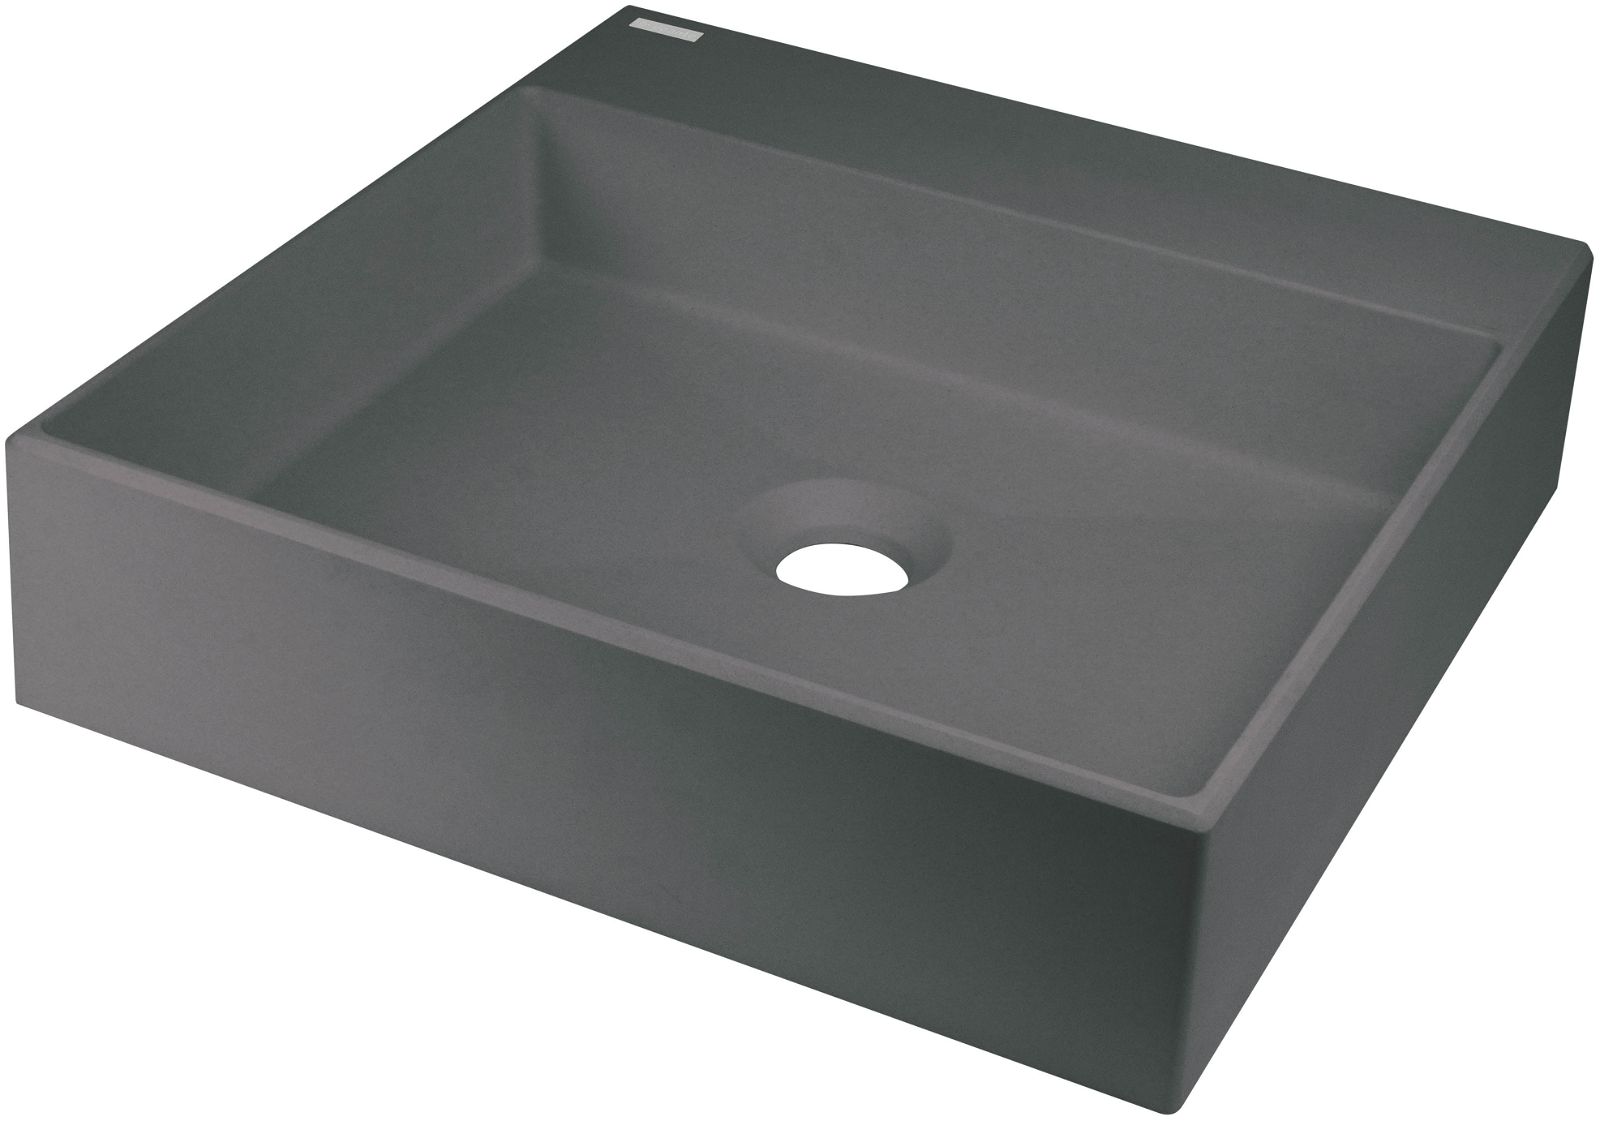 Granite washbasin, countertop - 400x400 mm - CQR_TU4S - Główne zdjęcie produktowe